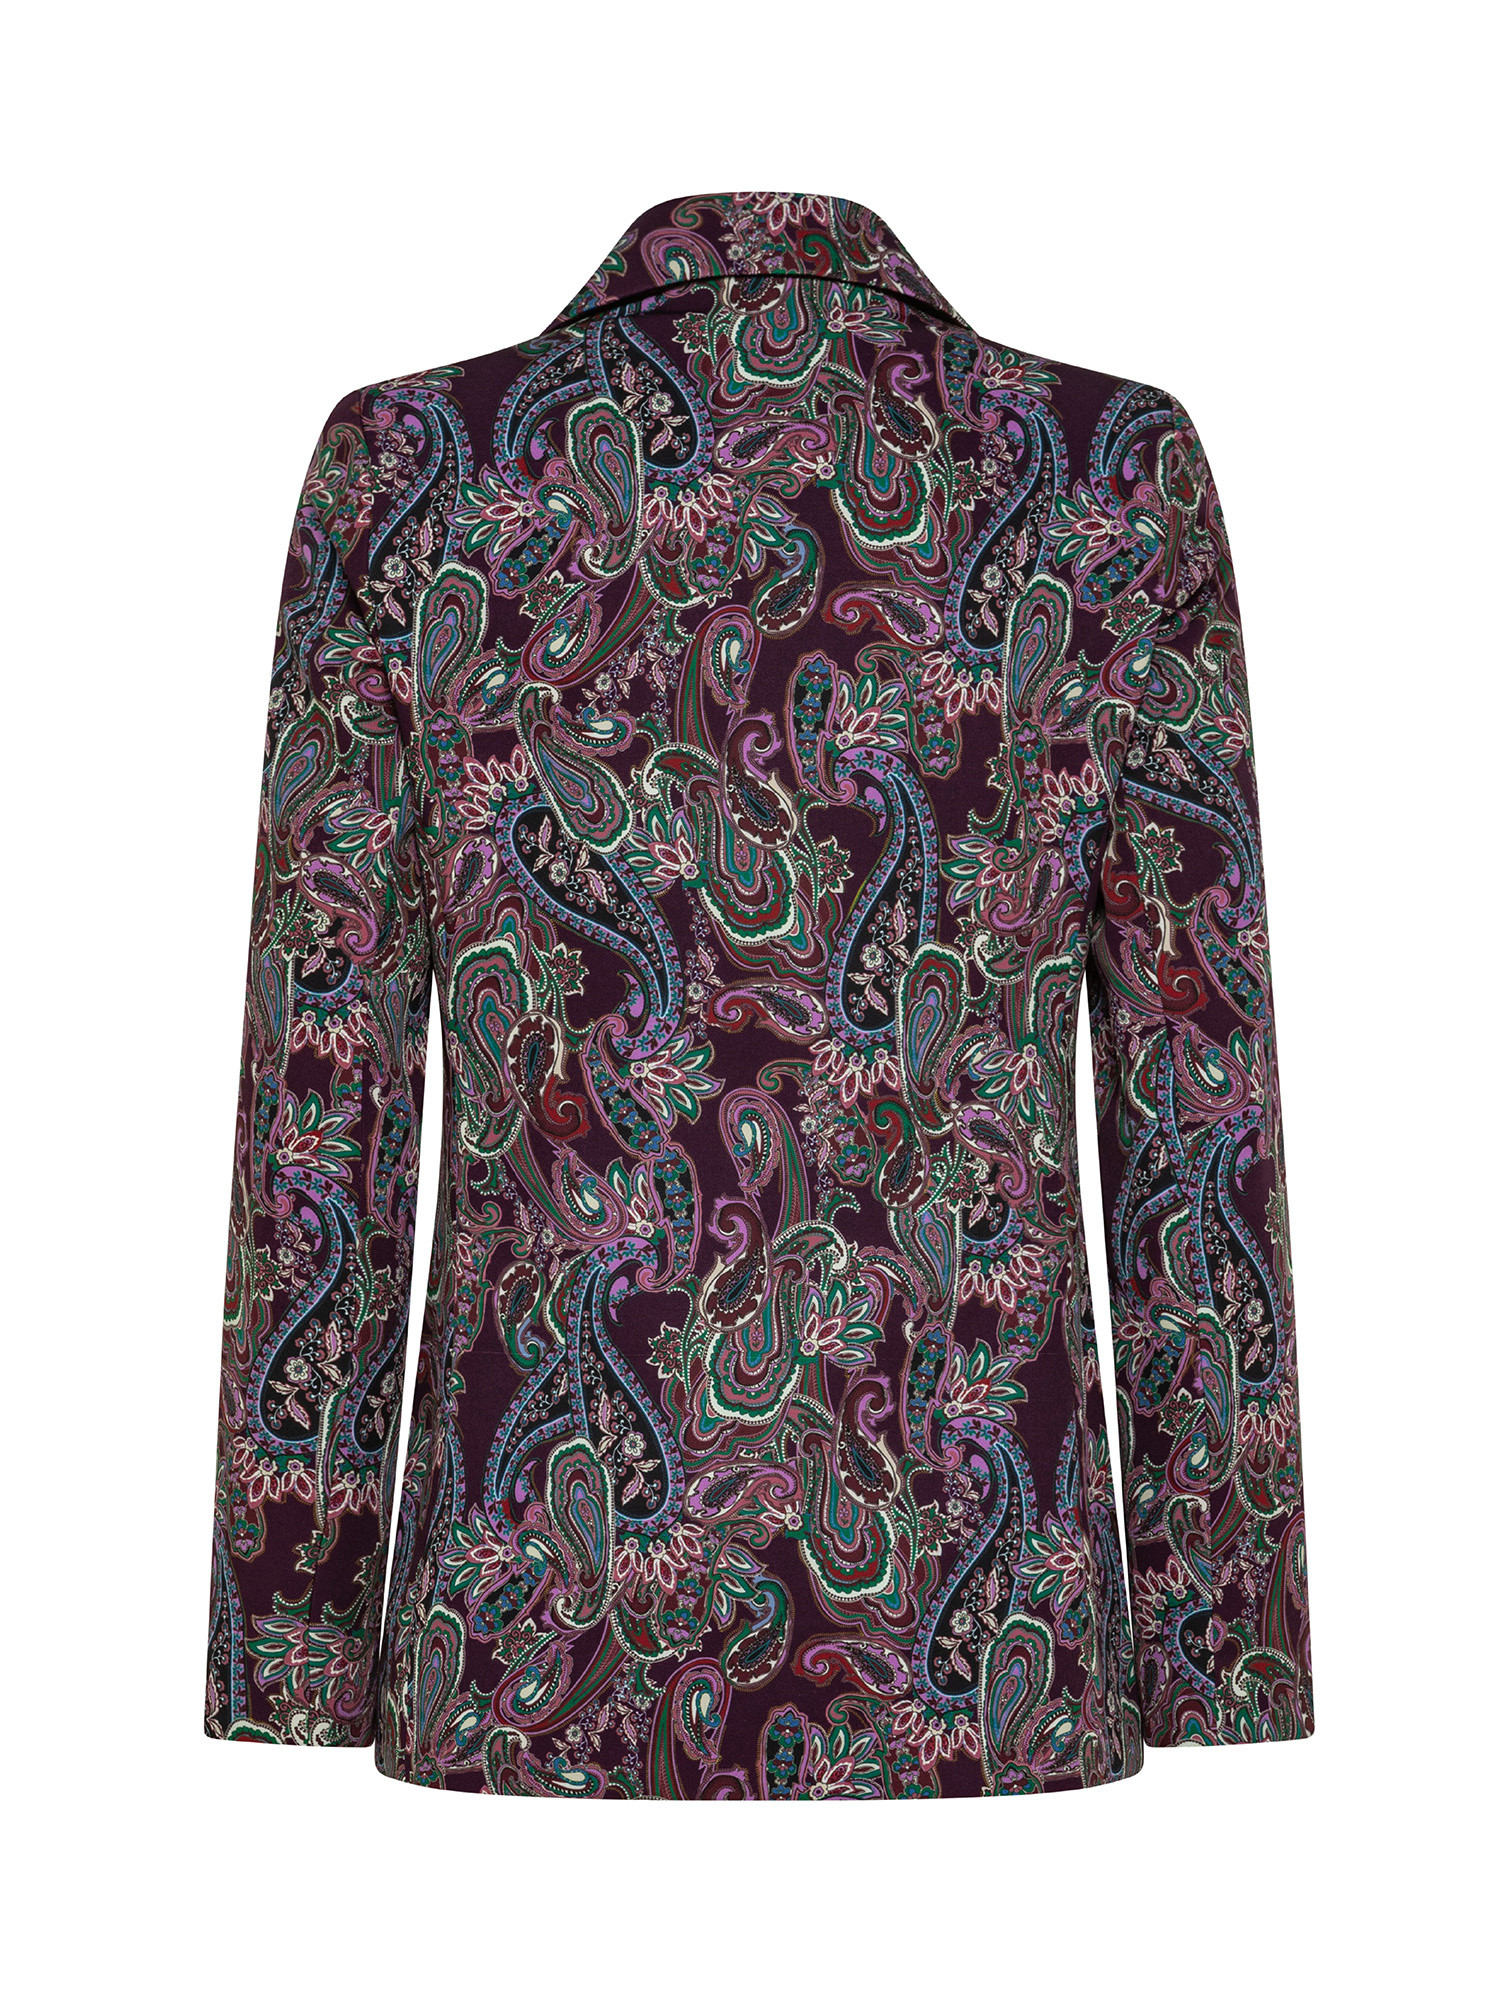 Options - Patterned blazer, Multicolor, large image number 1